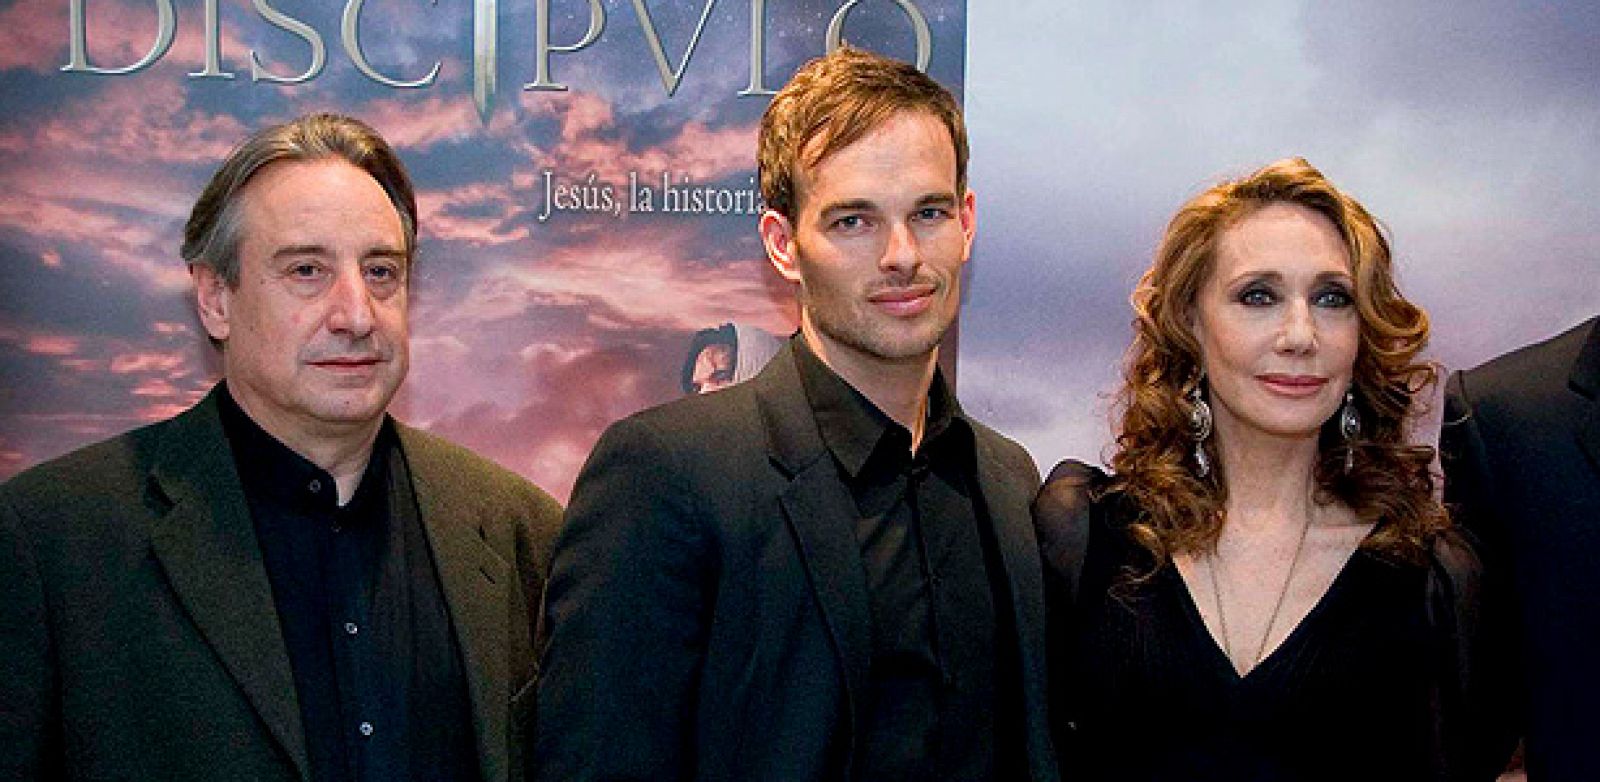 La actriz Marisa Berenson, acompañada de los actores Joel West (c), y Juanjo Puicorbé (i), durante la presentación de la película "El discípulo"